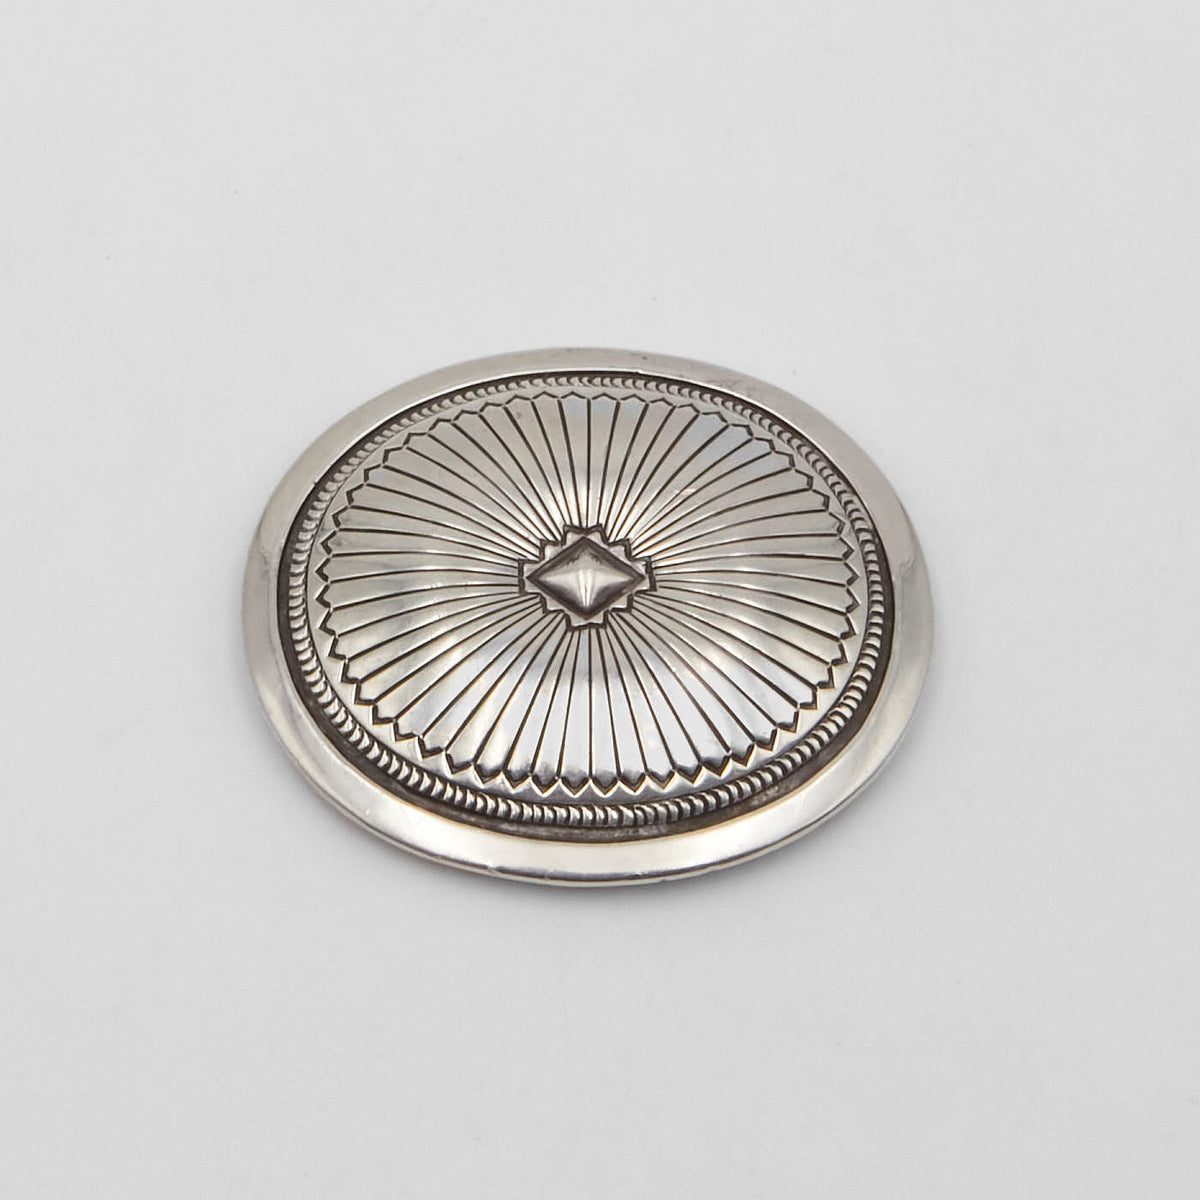 Vintage Jewelry Circlet Brooch